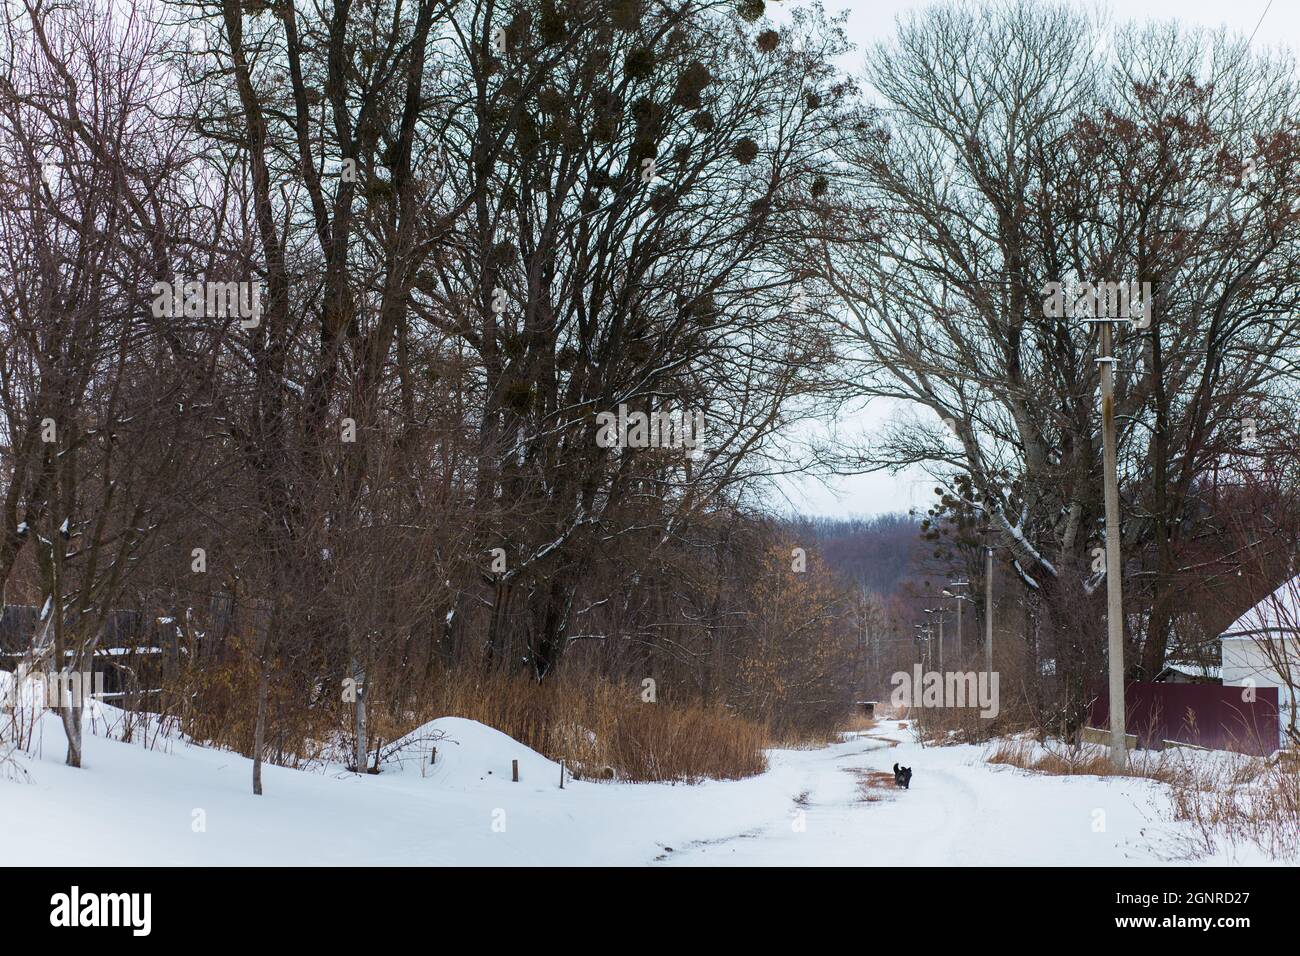 Der Hund läuft entlang der verschneiten Straße im Dorf. Riesige Bäume entlang der Straße. Der erste Schneefall. Stockfoto